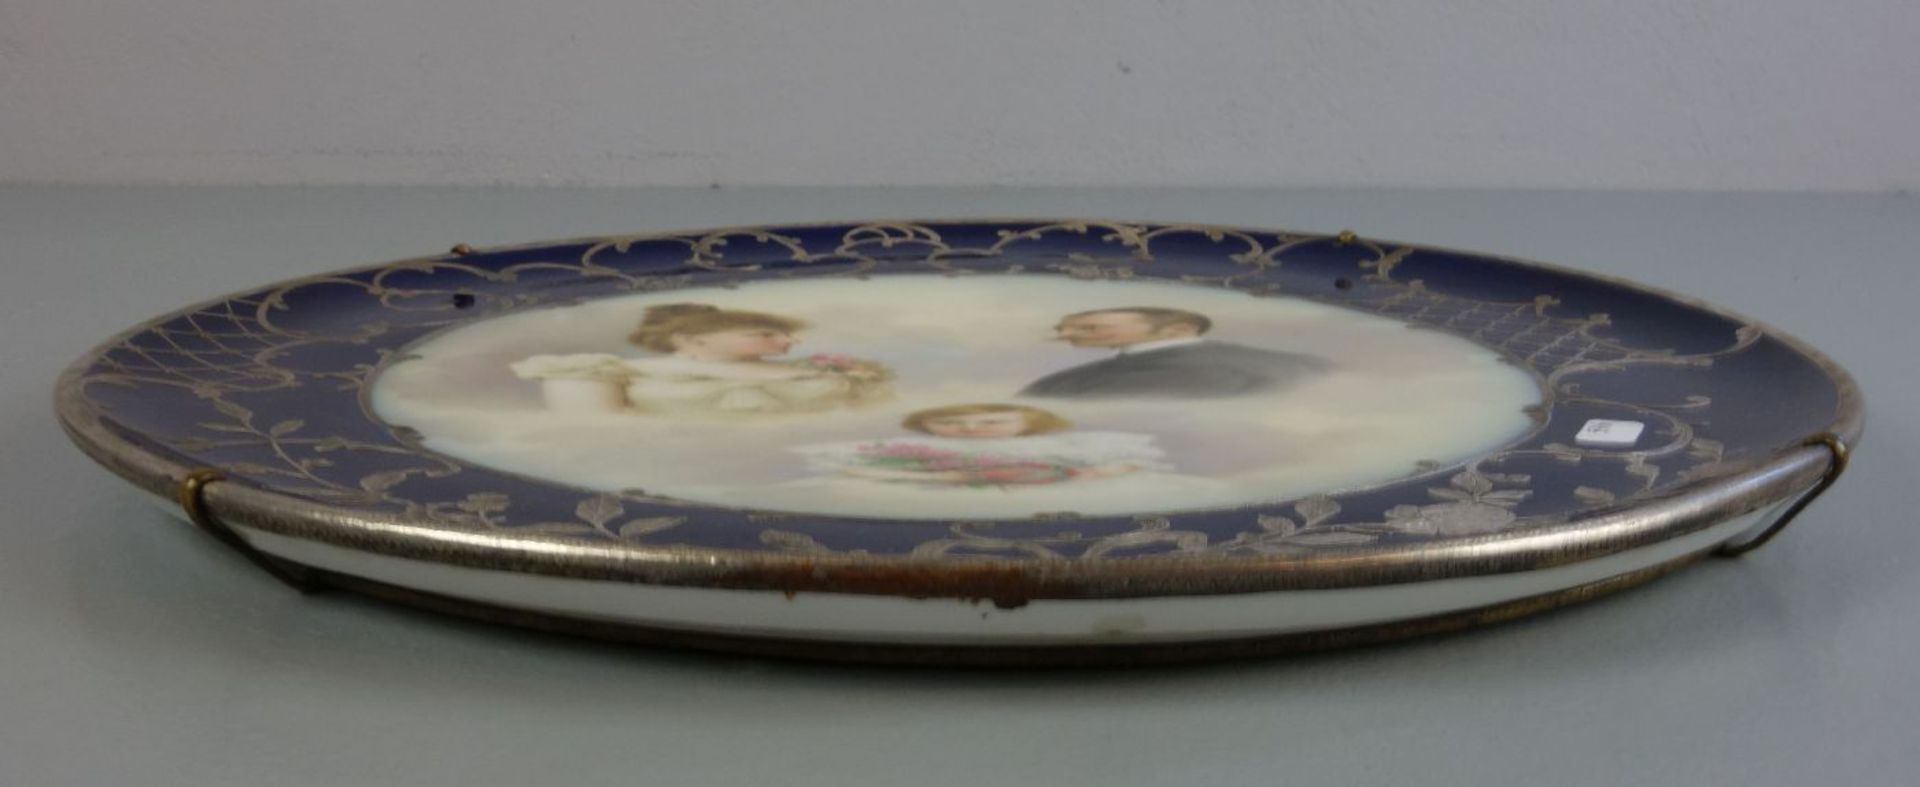 BILDTELLER / WANDTELLER / plate, Österreich - Wien, um 1900, Porzellan, glasurblau gemarkt mit - Image 3 of 4